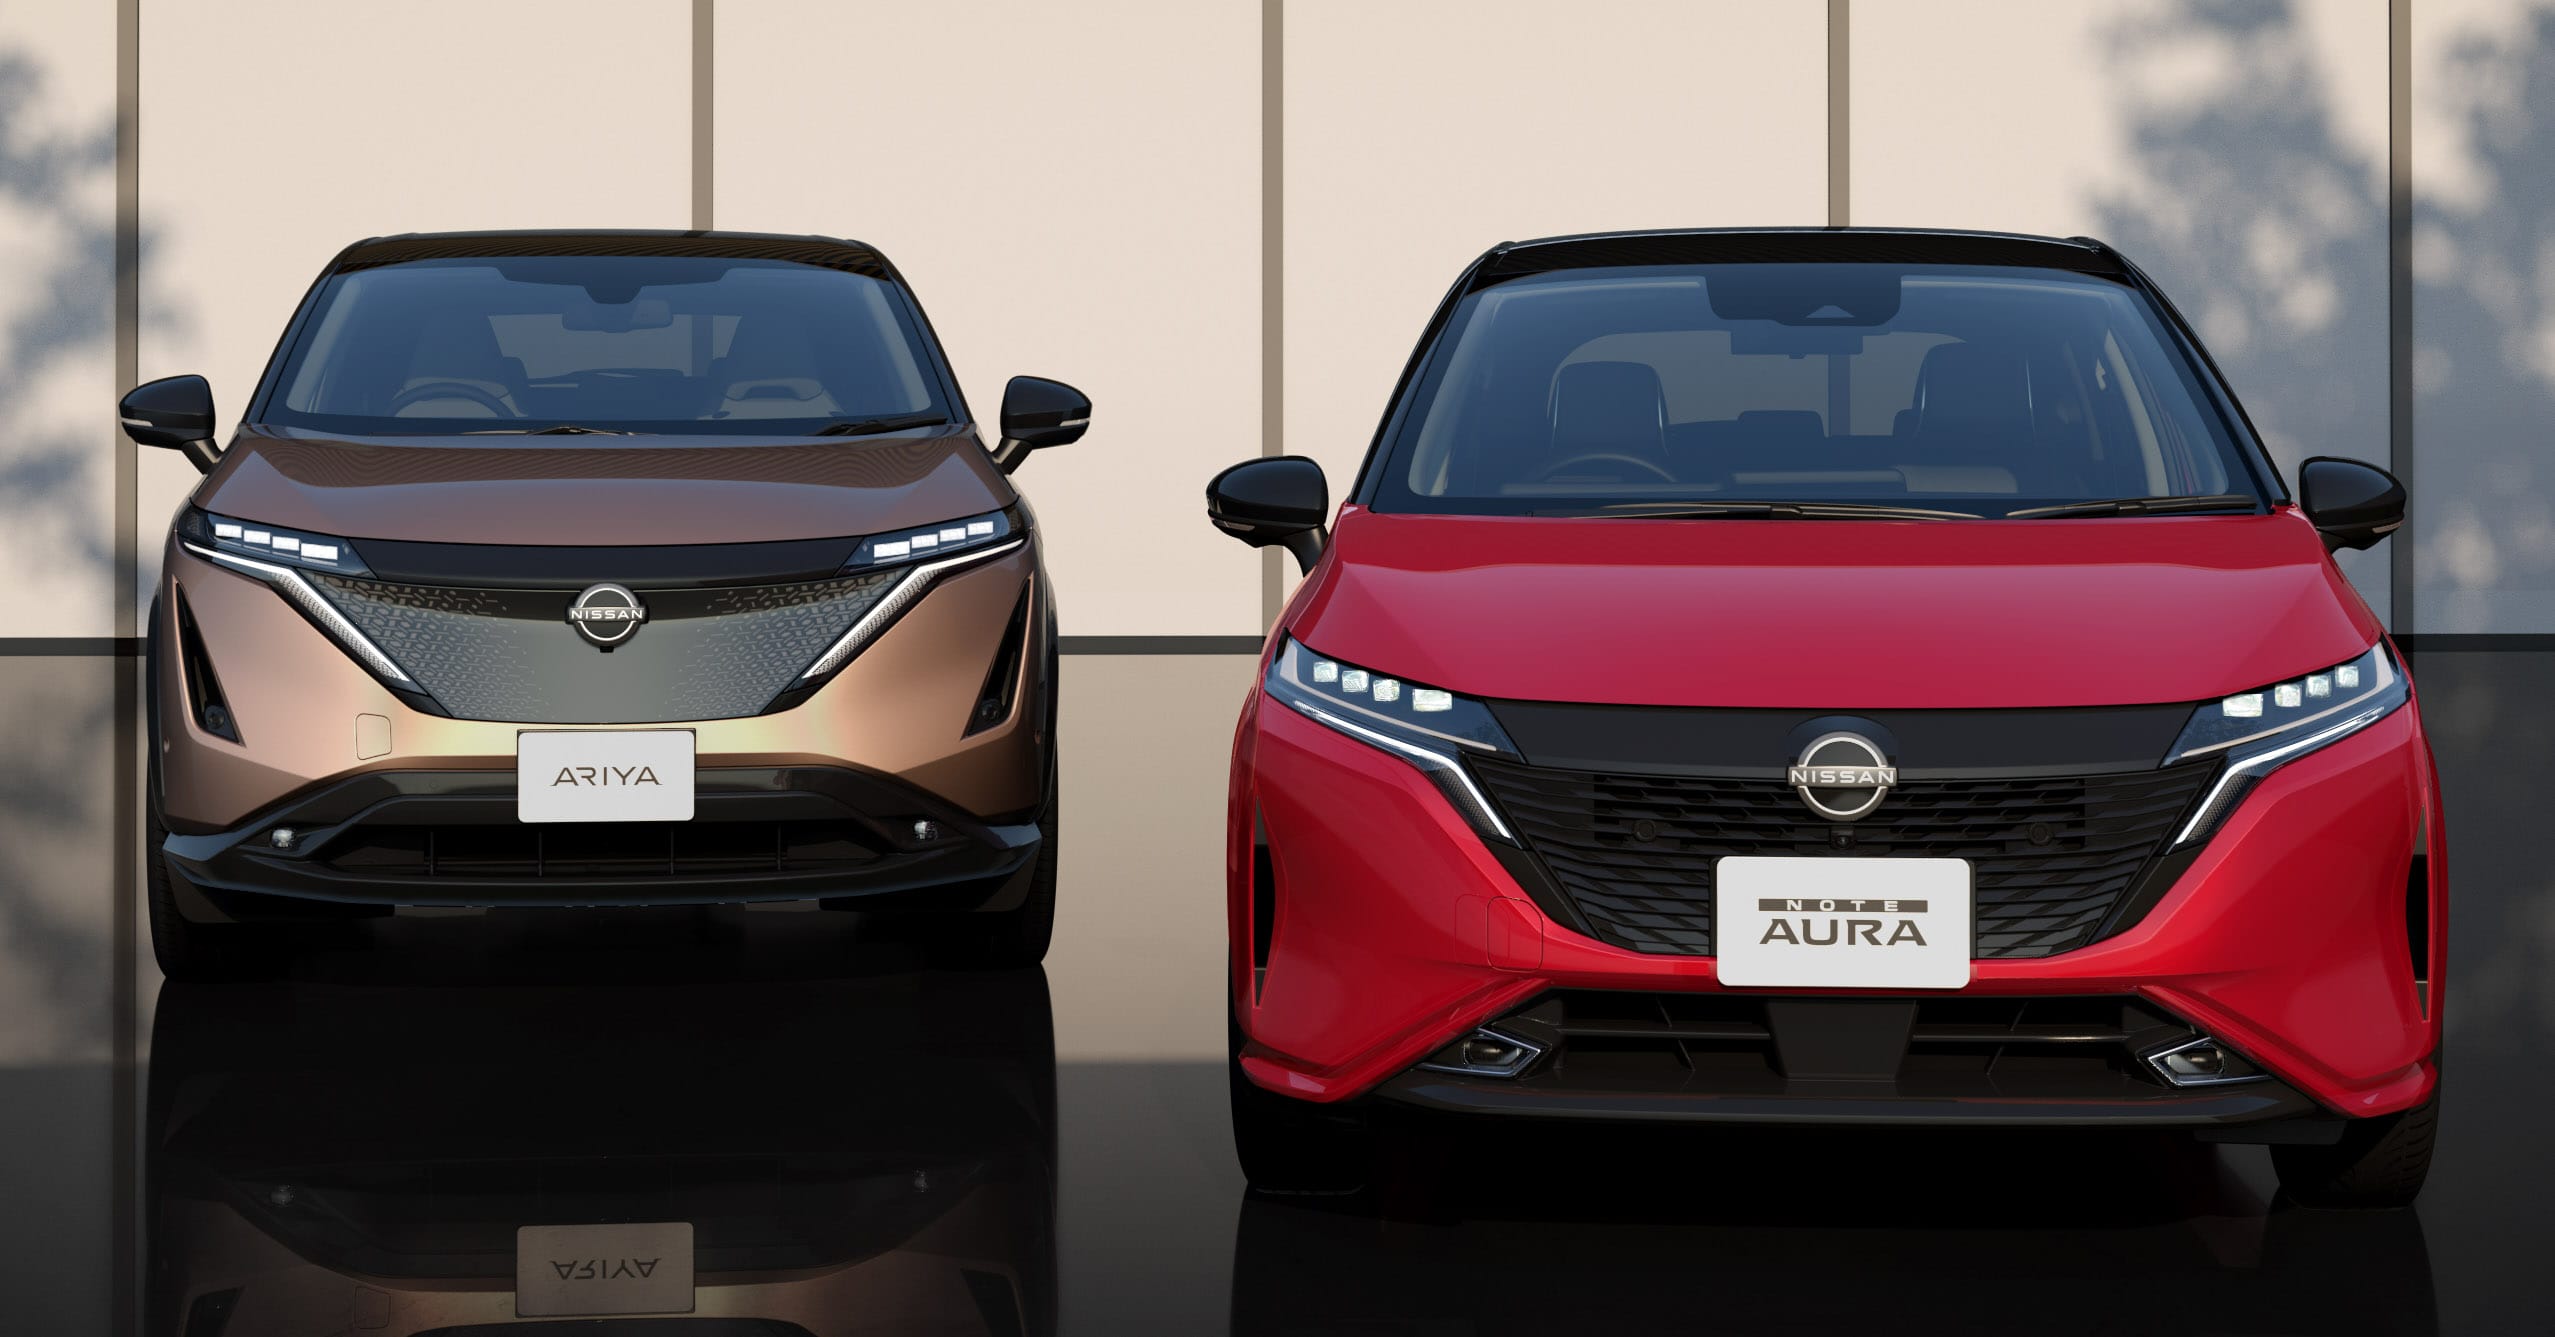 Mẫu xe Nissan Note Aura 2022 mới ra mắt ở Nhật Bản đã được đăng ký bản quyền kiểu dáng tại Việt Nam